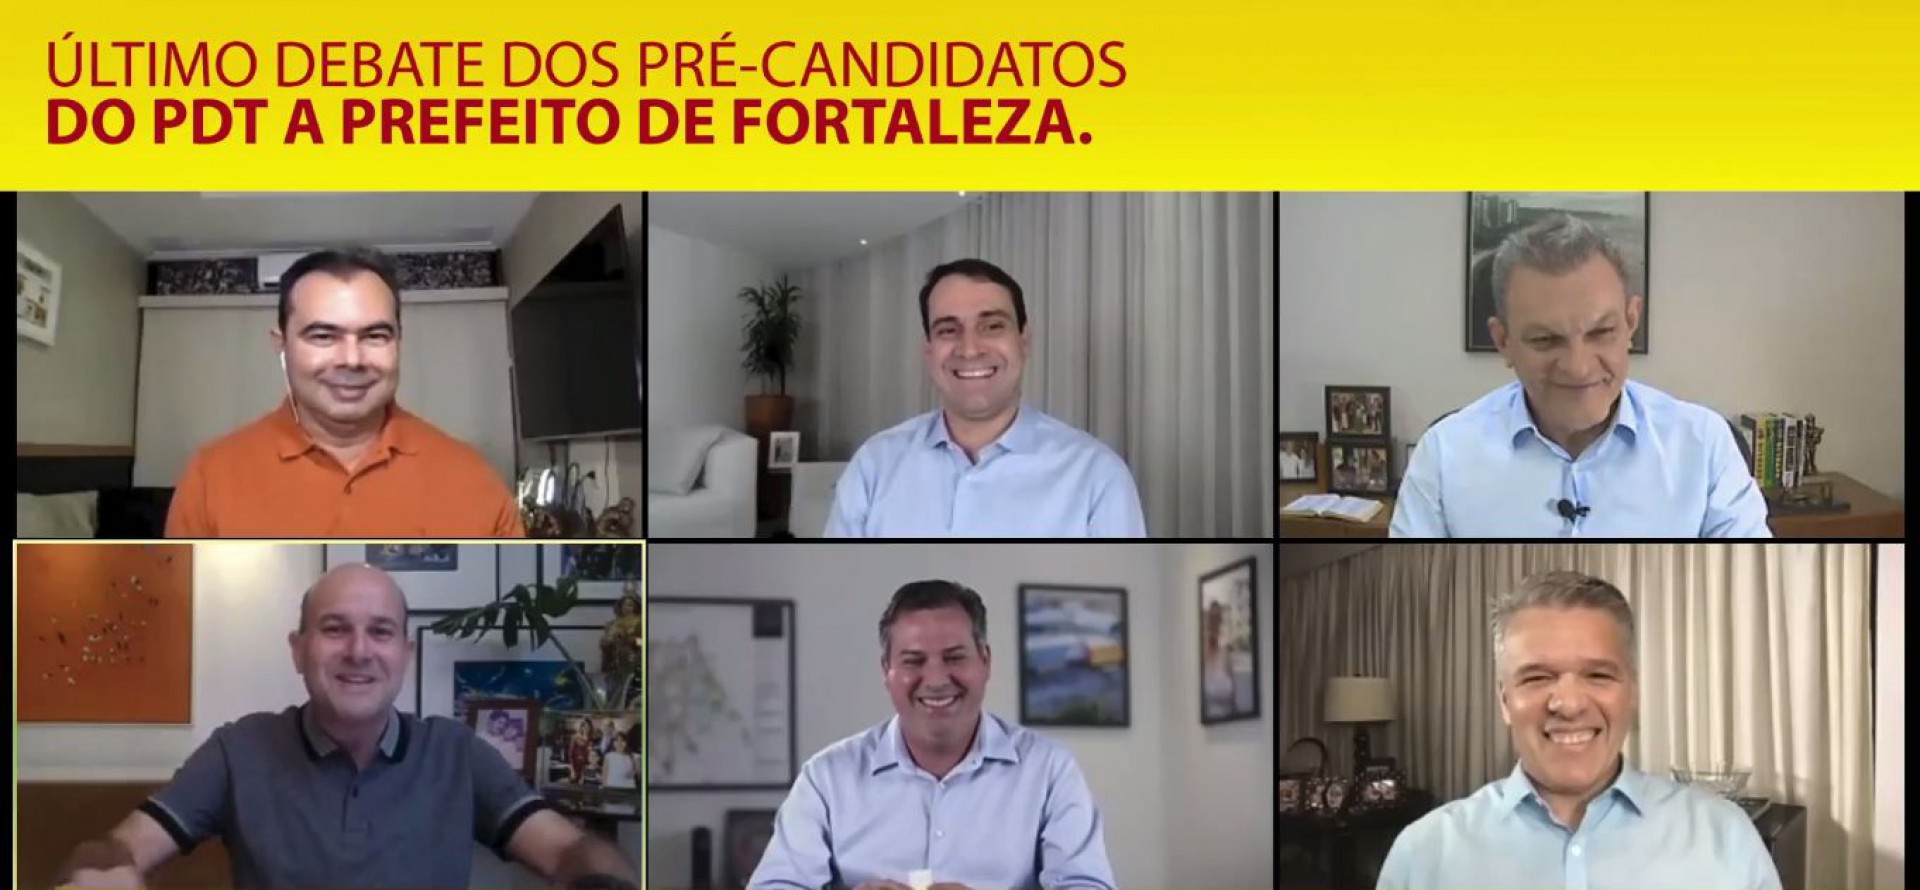 ÚLTIMO debate interno com pré-candidatos do PDT foi mediado pelo prefeito Roberto Cláudio (Foto: Reprodução)